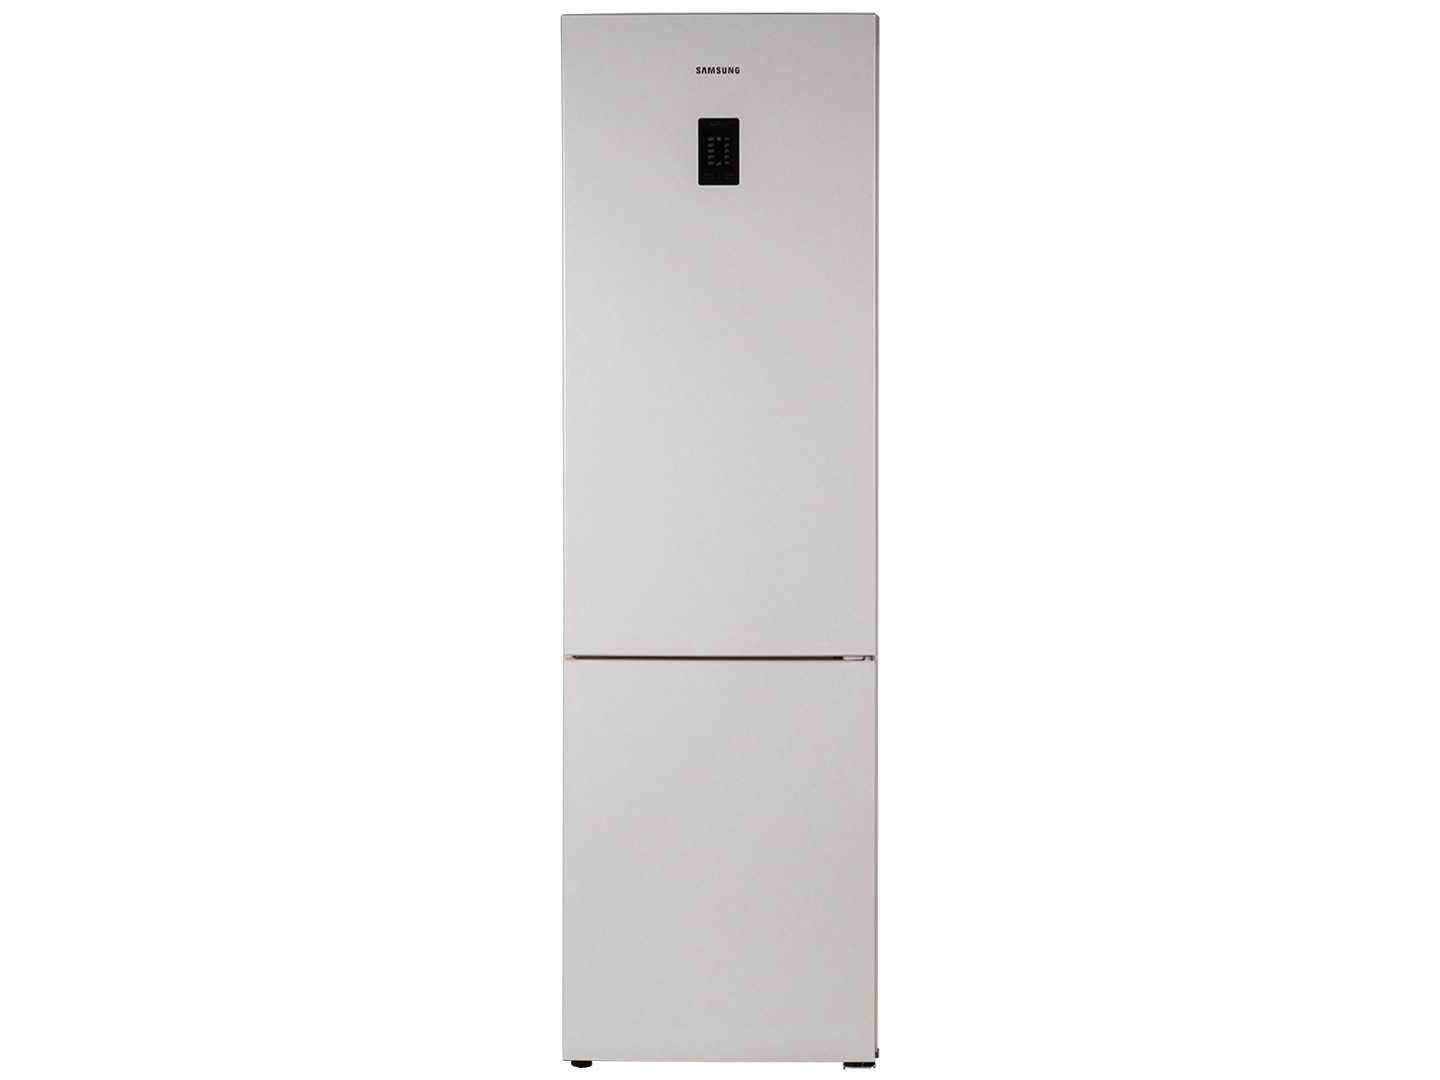 Обзор лучших моделей двухкамерных холодильников с зоной свежести lg ga-b489 yeqz, ga-b489 yvqz, samsung rb-37 j5200ww, bosch kgn39xl24